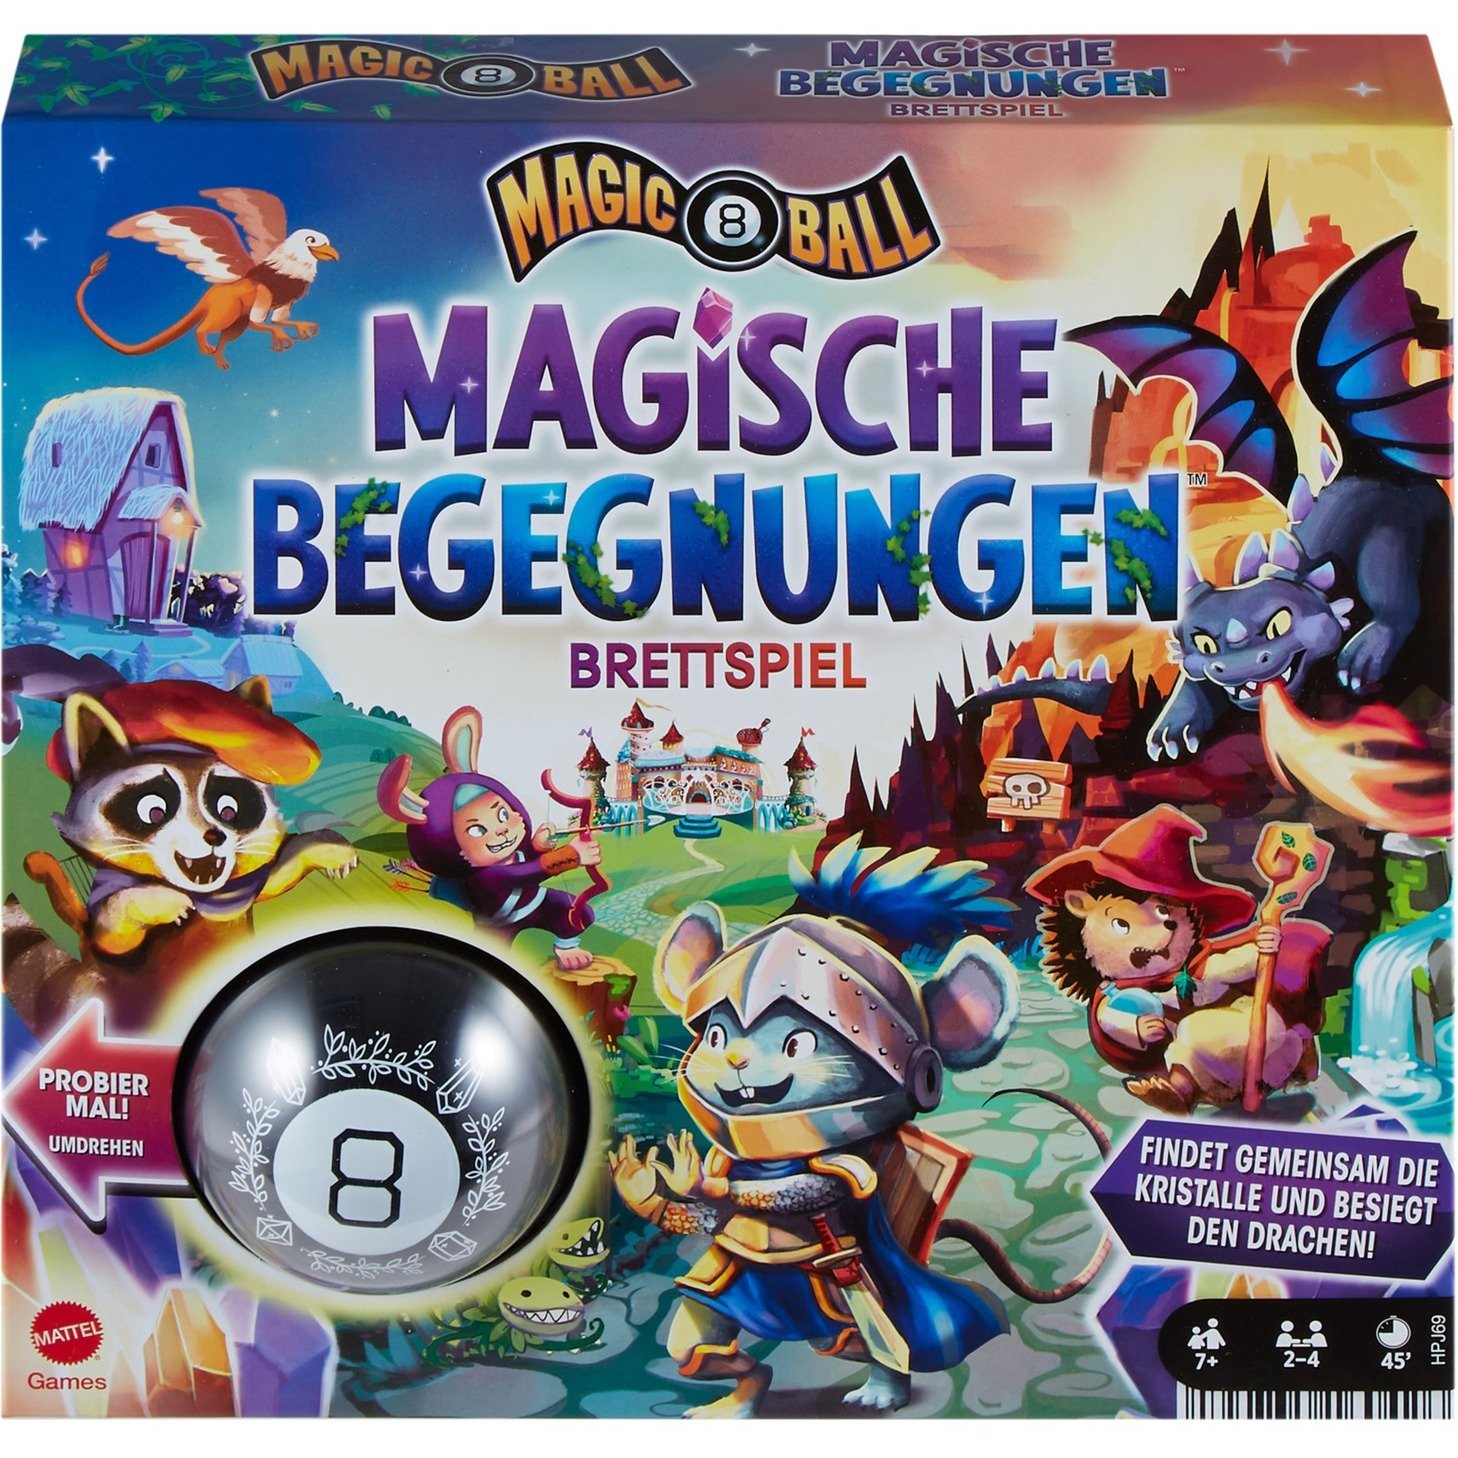 Magic 8 Ball - Magische Begegnungen, Brettspiel von MATTEL GAMES